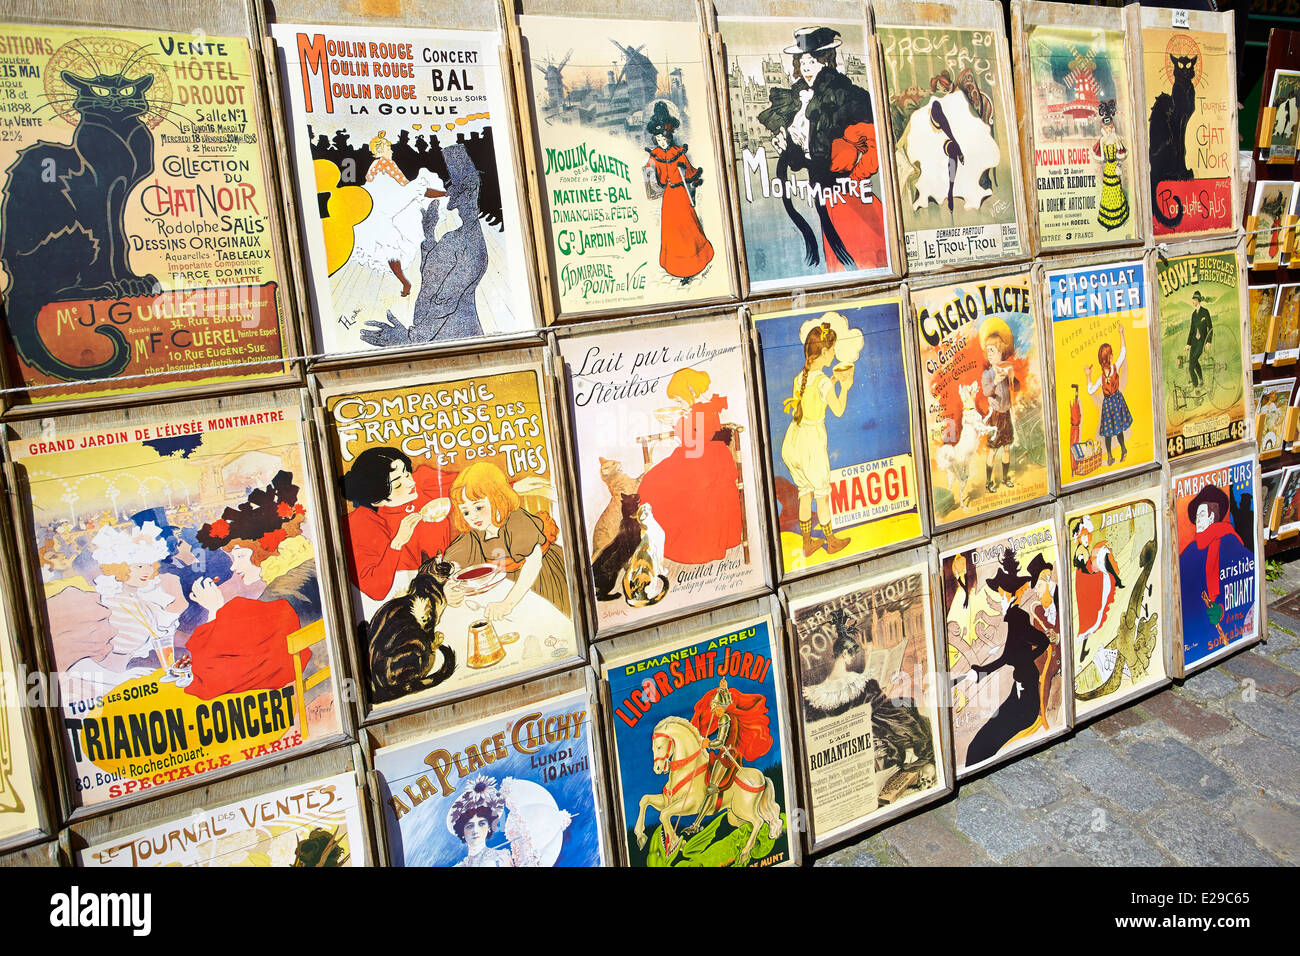 Reproduktion von alten Plakaten, Viertel Montmartre, Paris, Frankreich Stockfoto